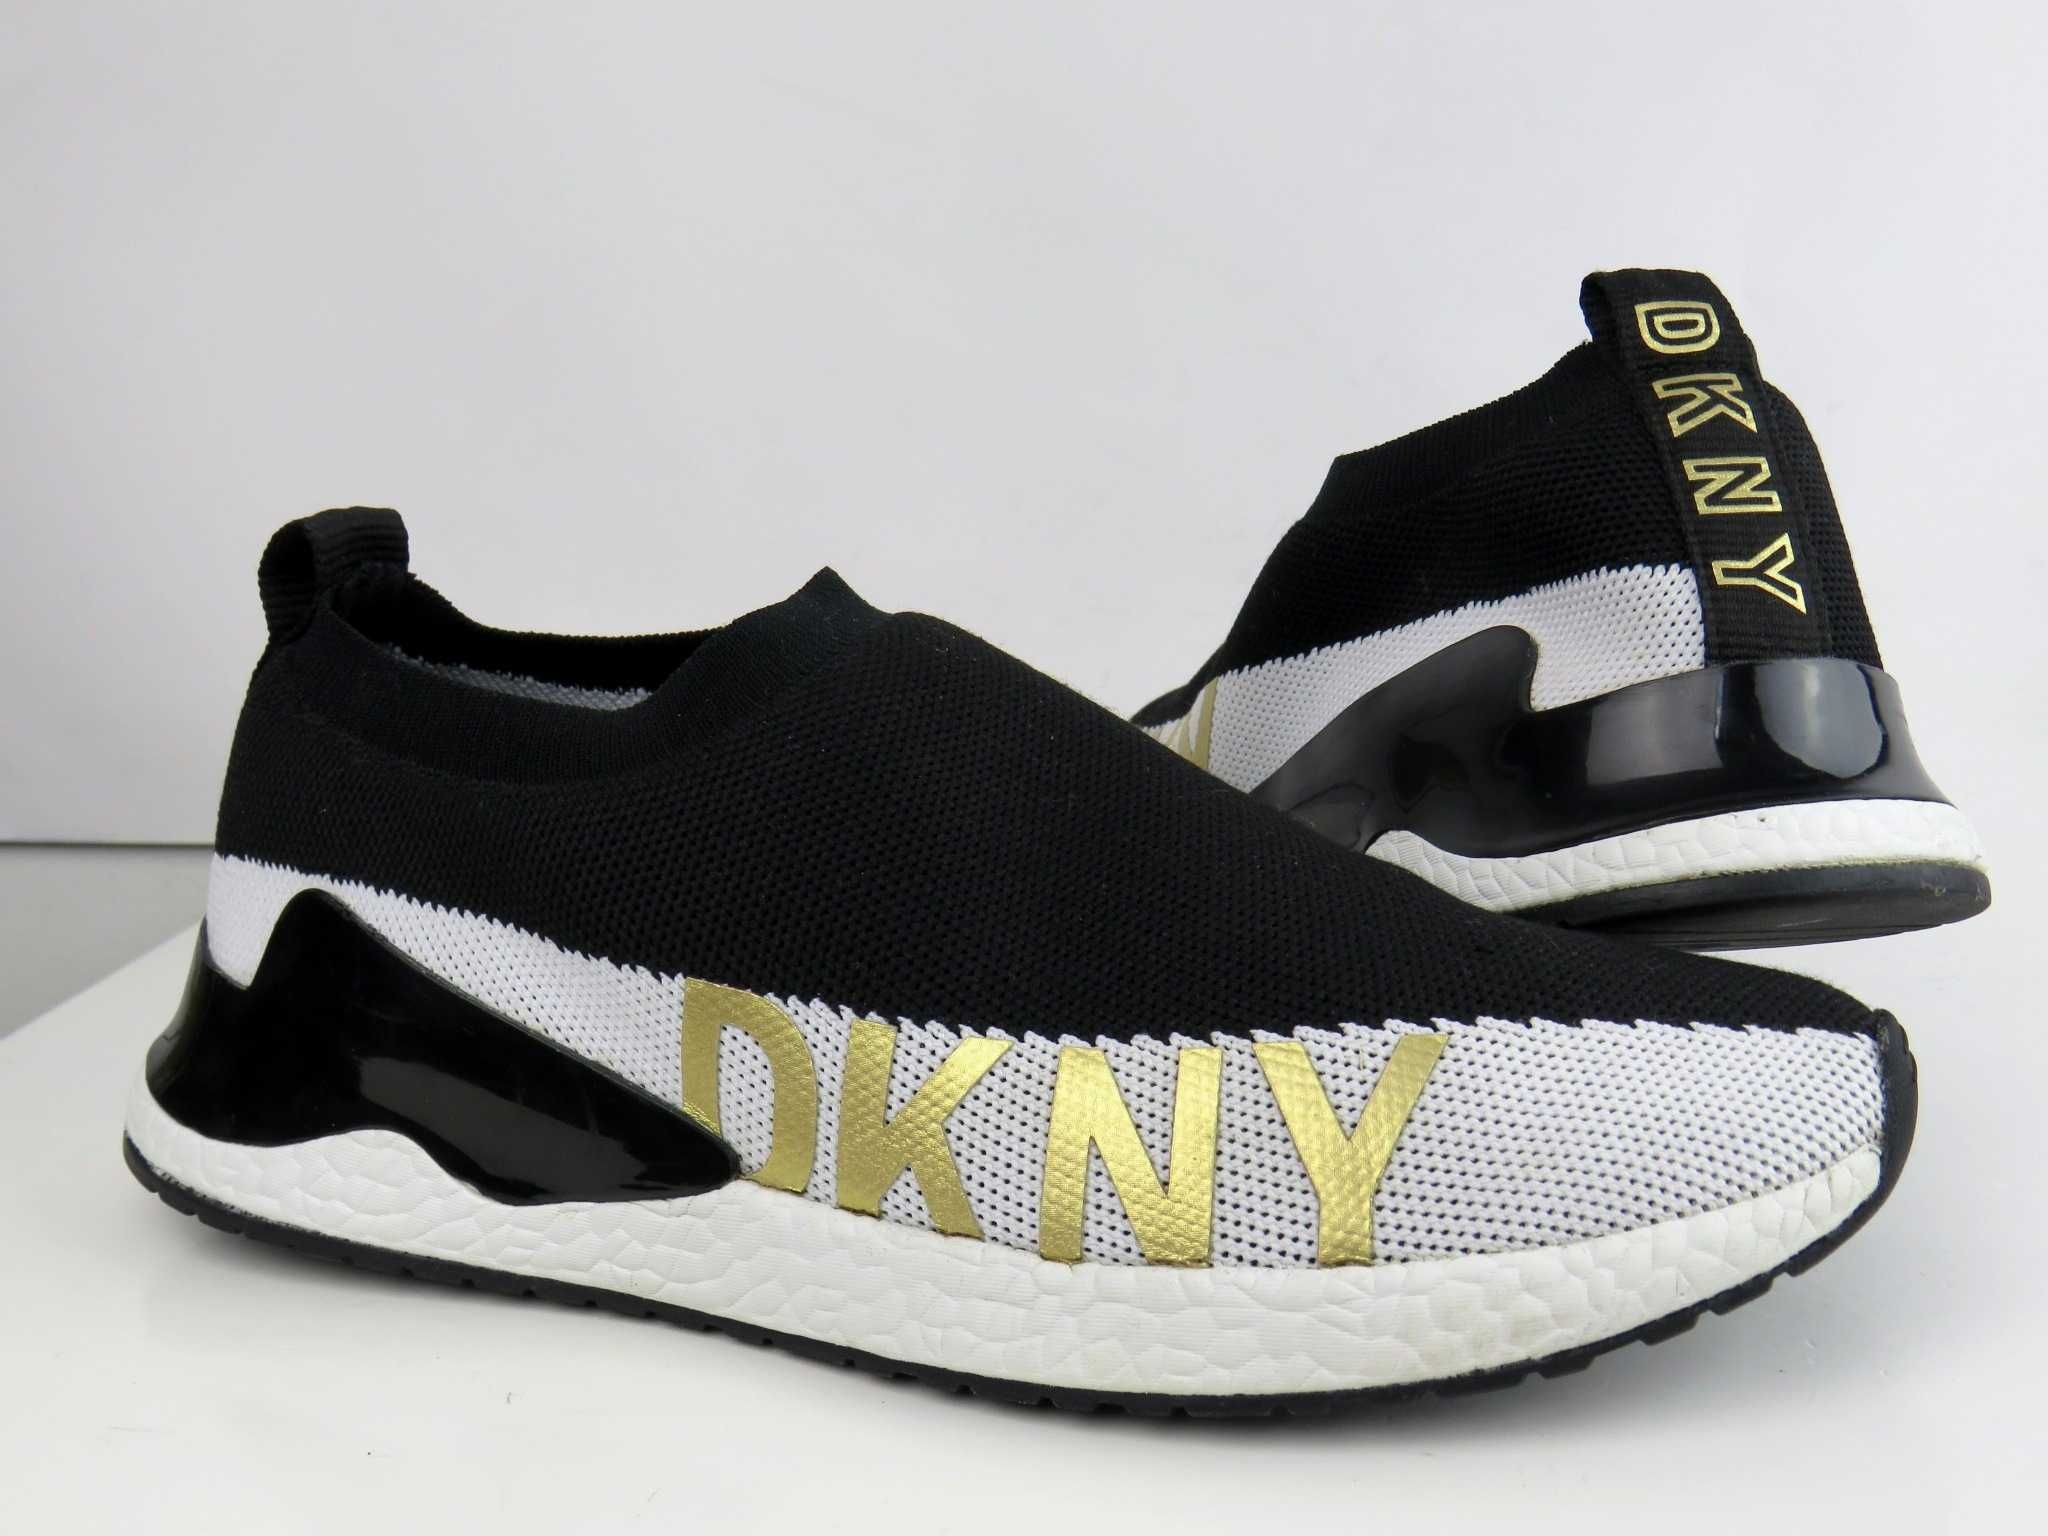 DKNY buty sneakersy r 38,5 -50%